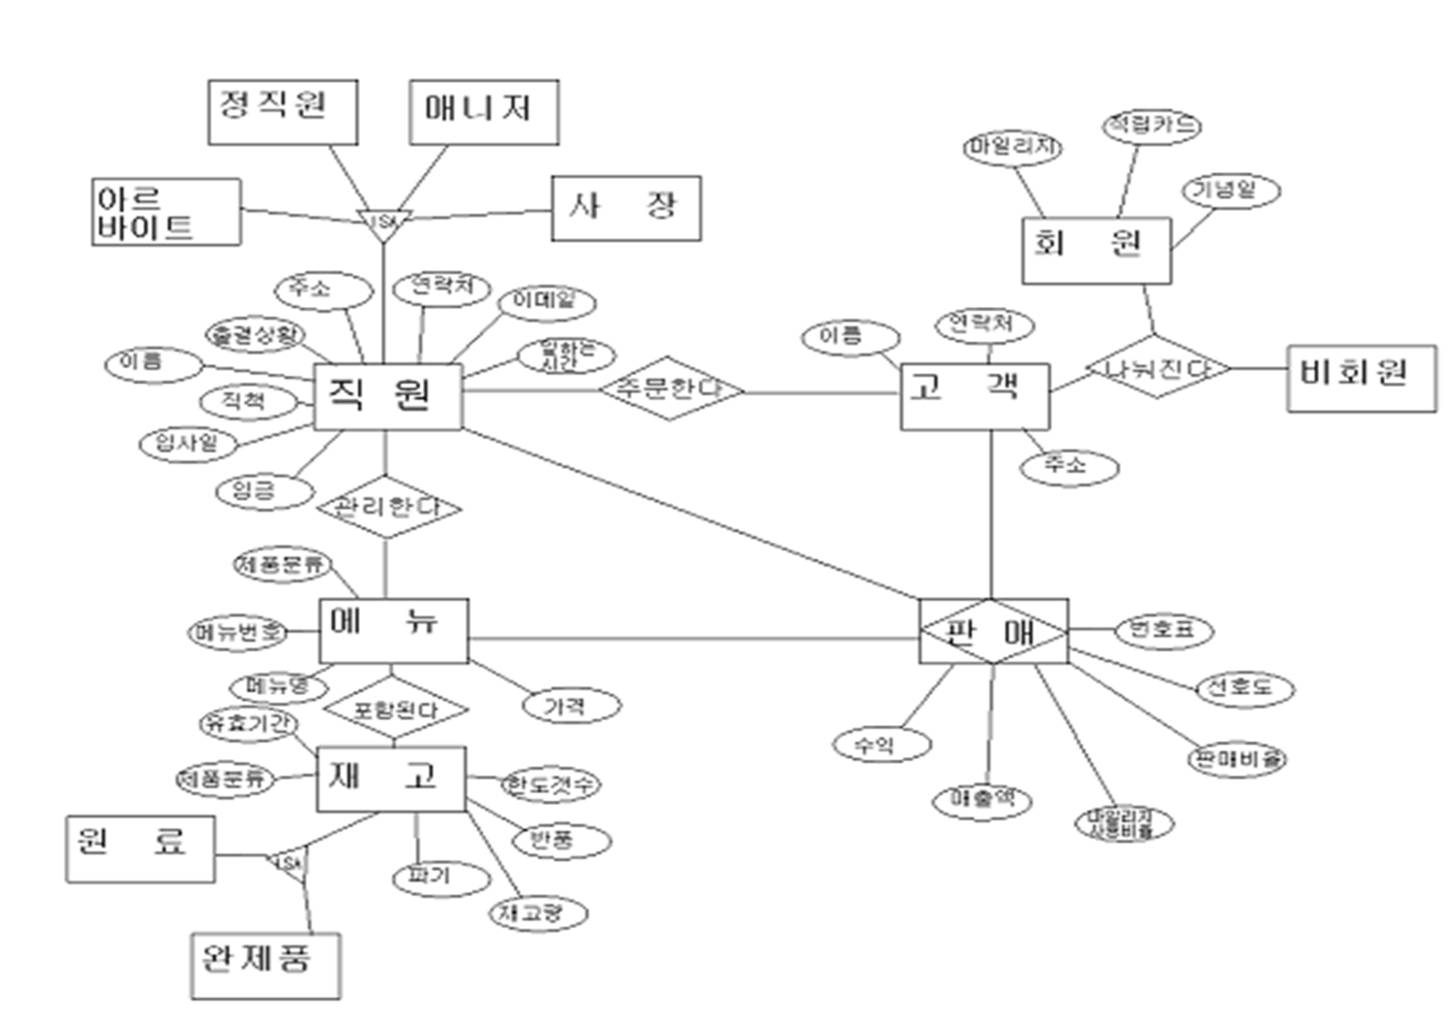 Dbteam095 / 데이터베이스 모델링 regarding 데이터베이스 Er 다이어그램